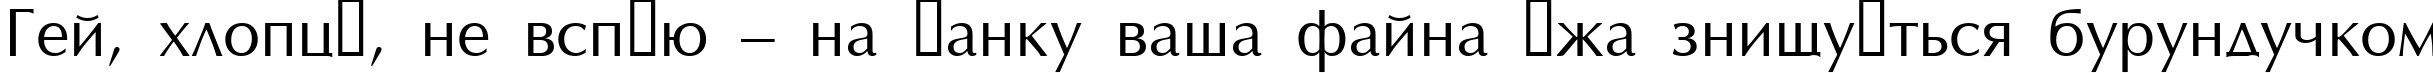 Пример написания шрифтом Opus текста на украинском